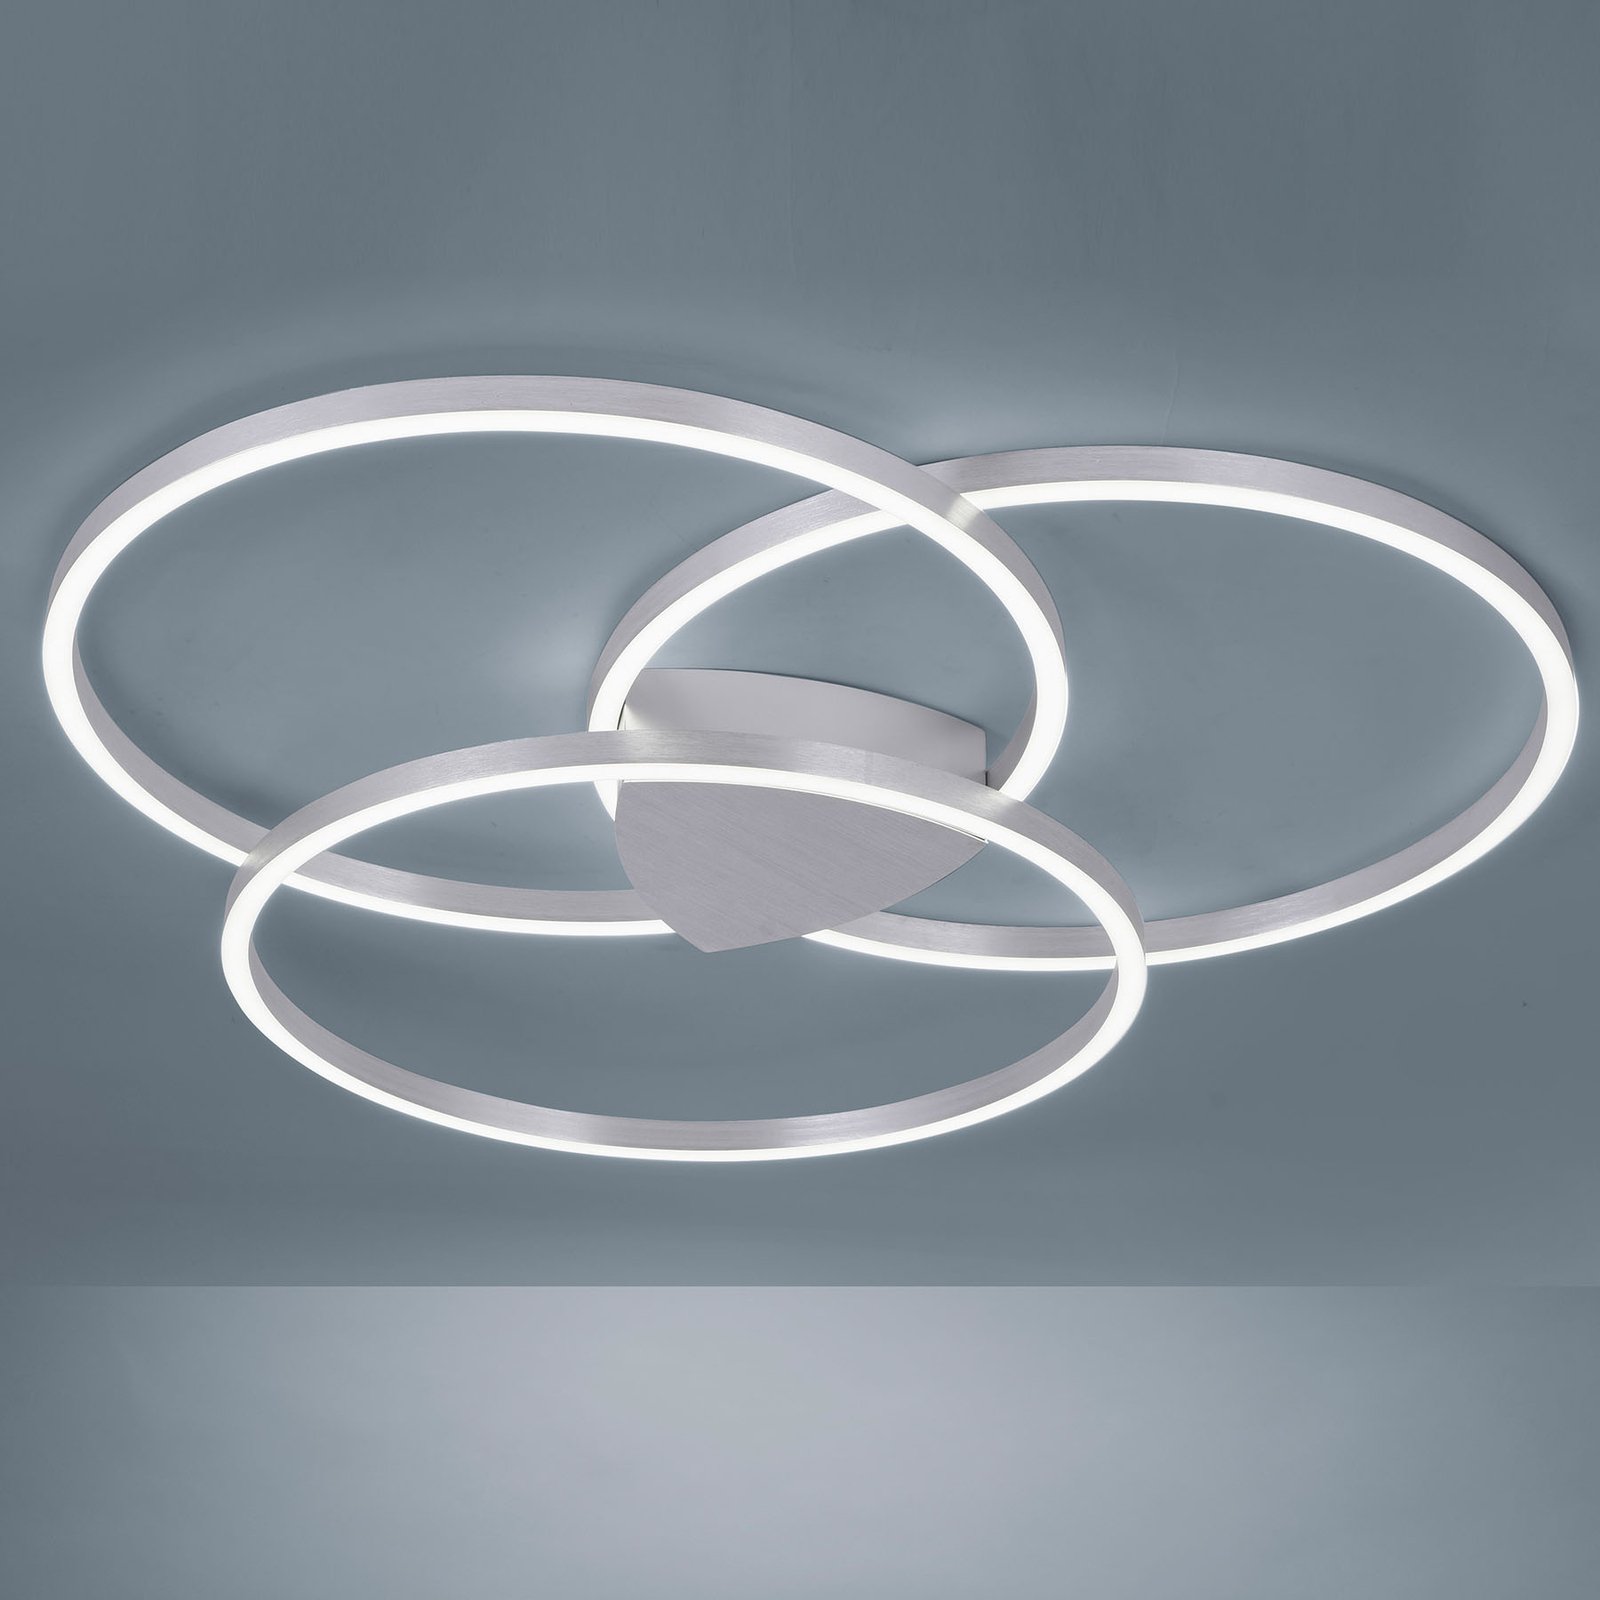 Paul Neuhaus Q-KATE LED plafondlamp